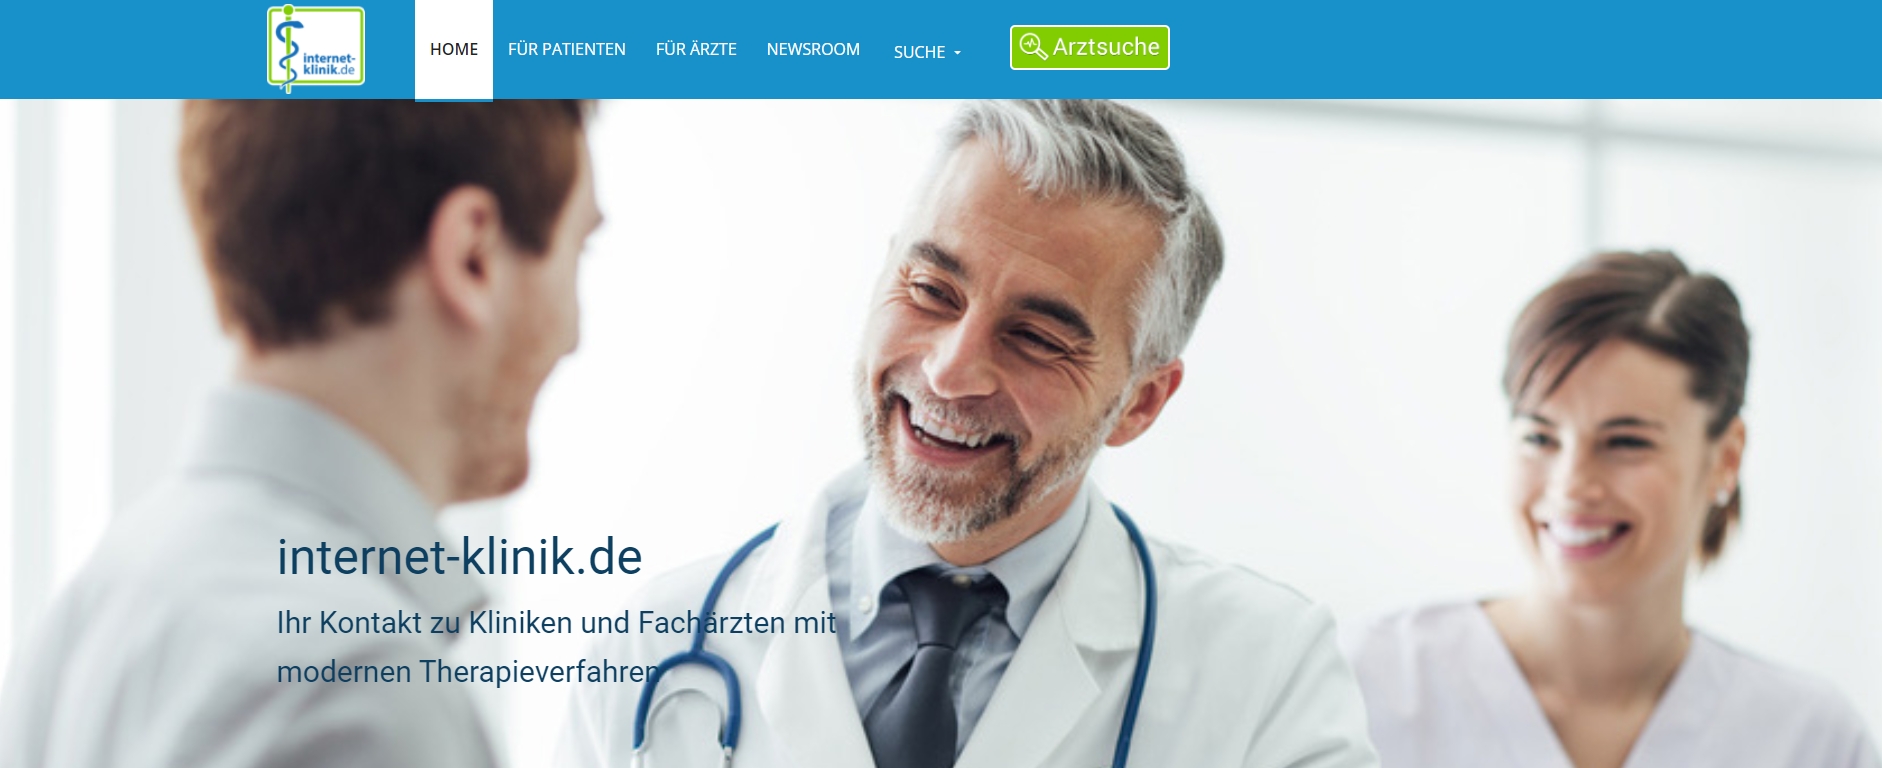 internet-klinik.de: Neues Facharzt-Portal für moderne Therapien gibt spezialisierten Ärzten die Möglichkeit, sich kostenlos zu registrieren